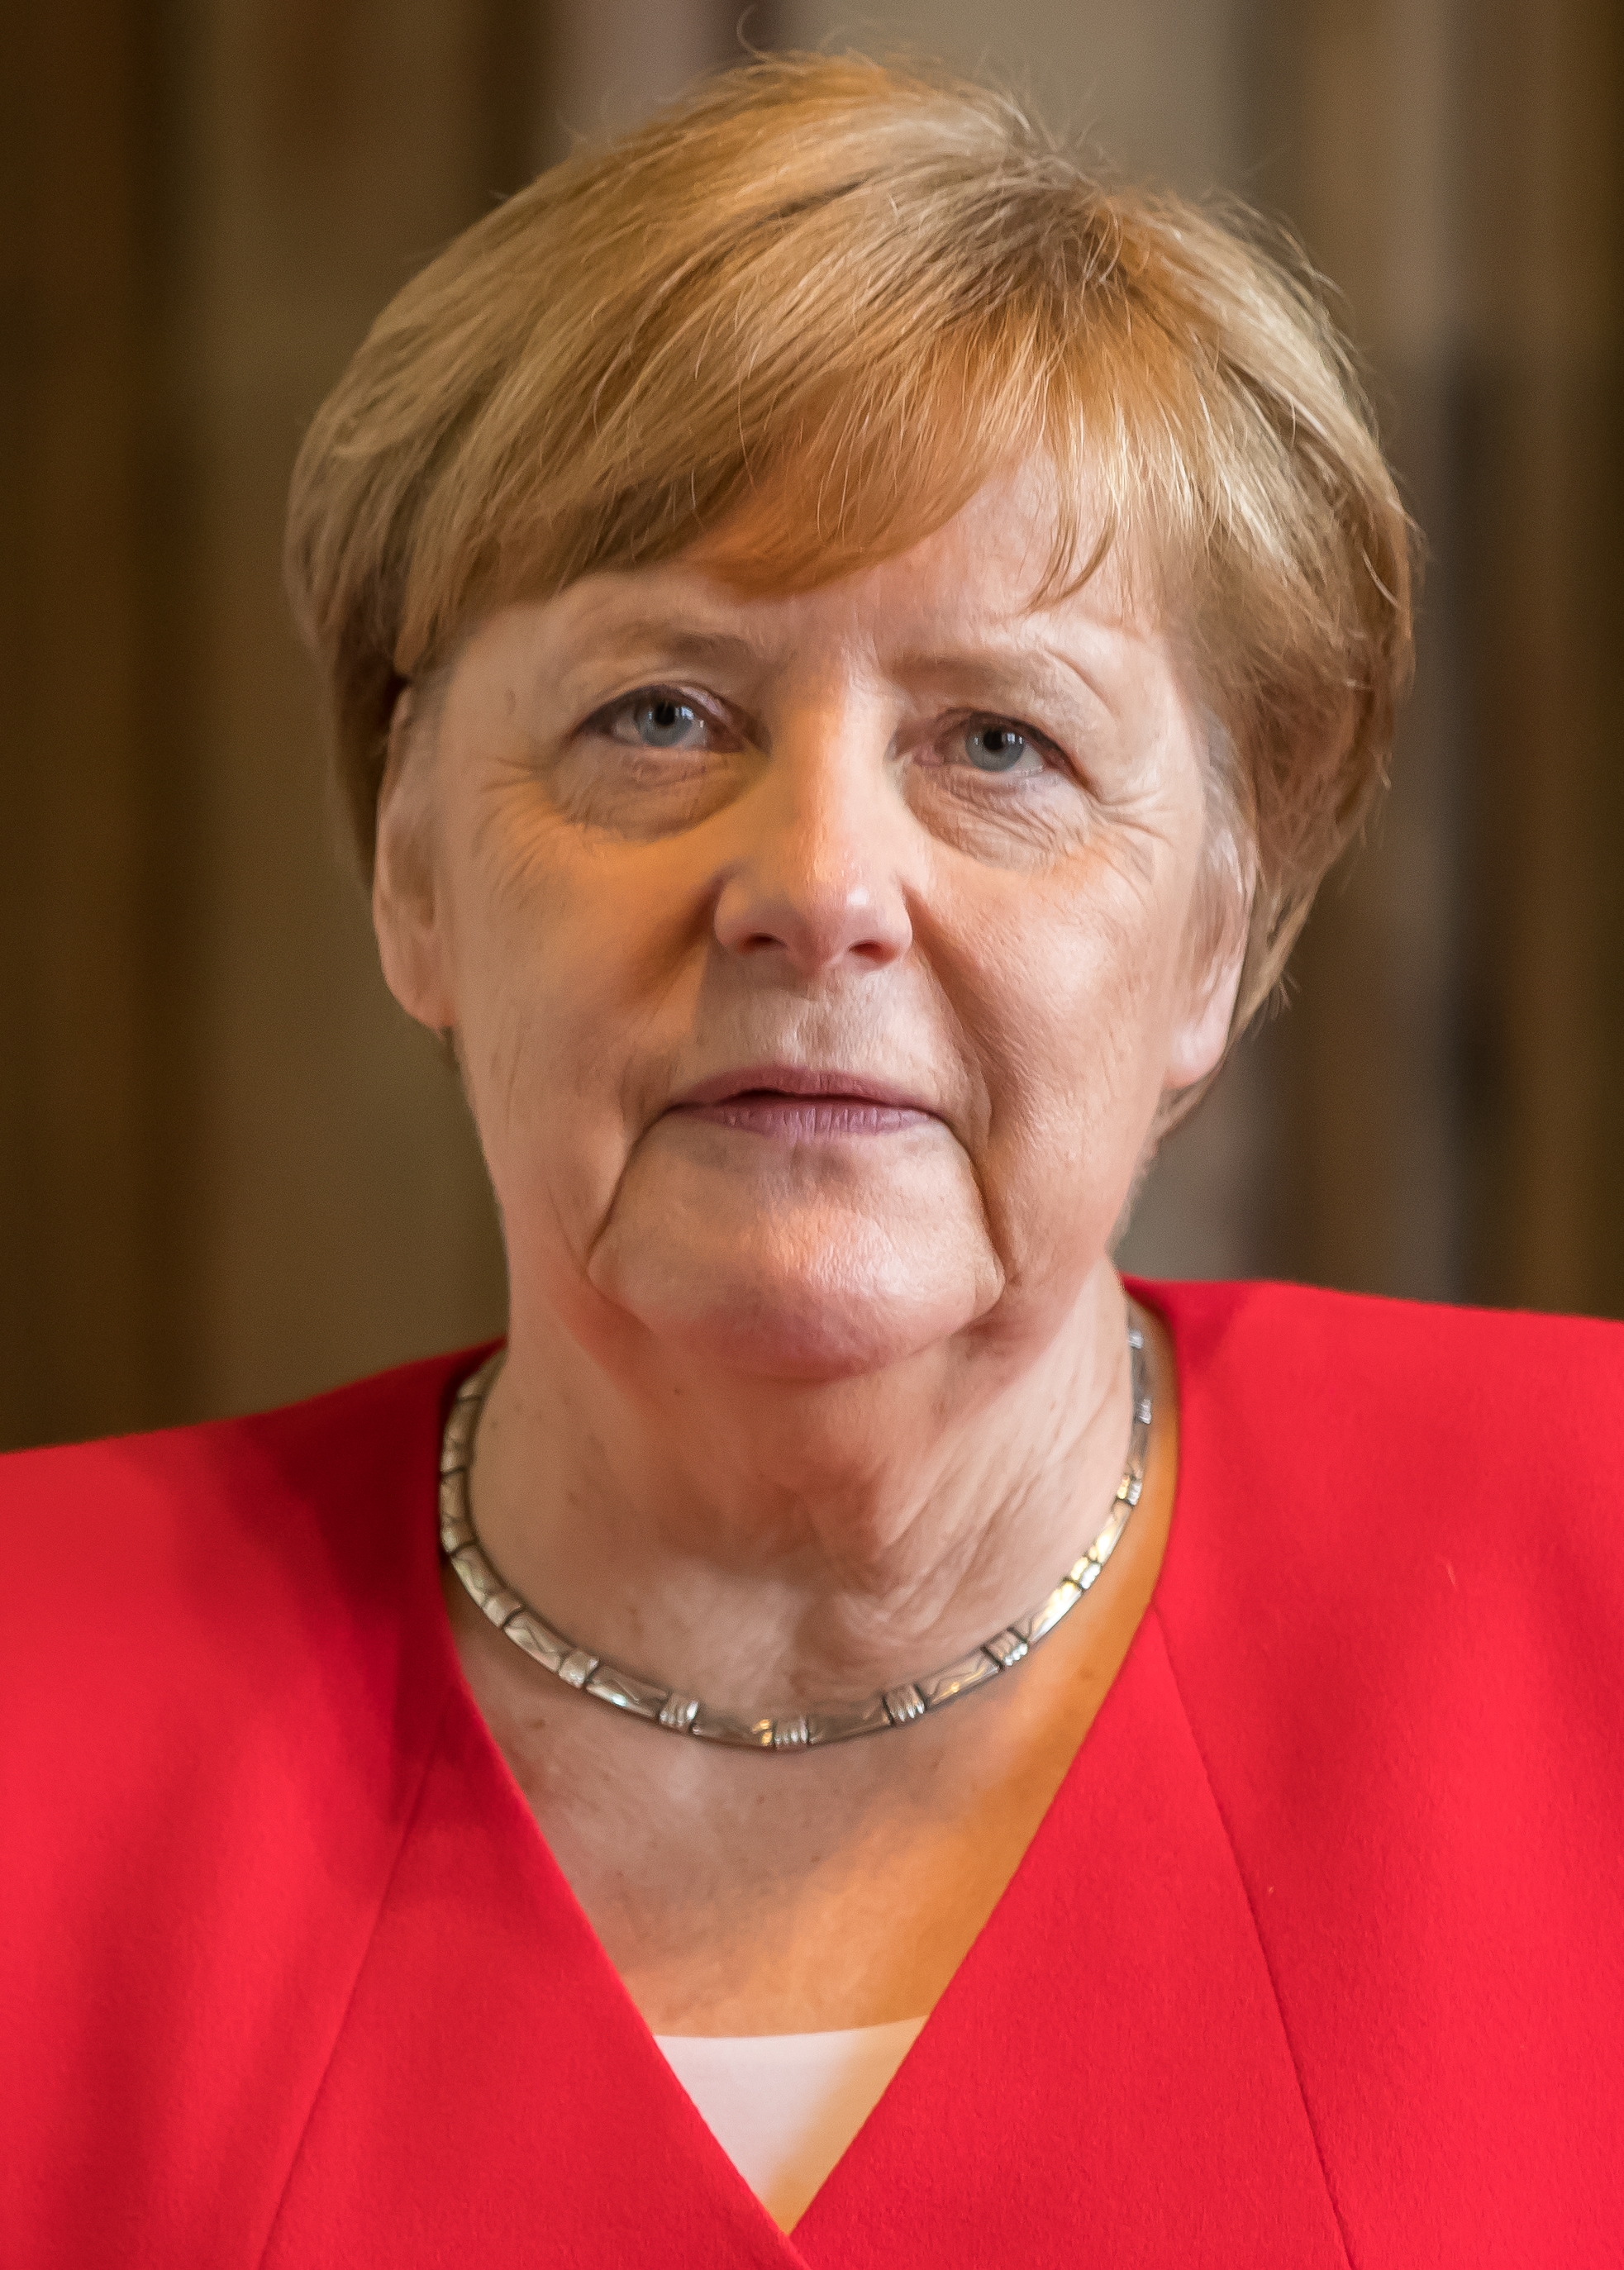 auteur Angela Merkel de la citation Si nous nous rappelons le fait que chaque cinquième Américain pointe à juste titre et peut-être aussi avec un certain degré de fierté à son ascendance allemande ou son ascendance allemande, nous pouvons dire en toute sécurité que nous partageons, en effet, les racines communes.